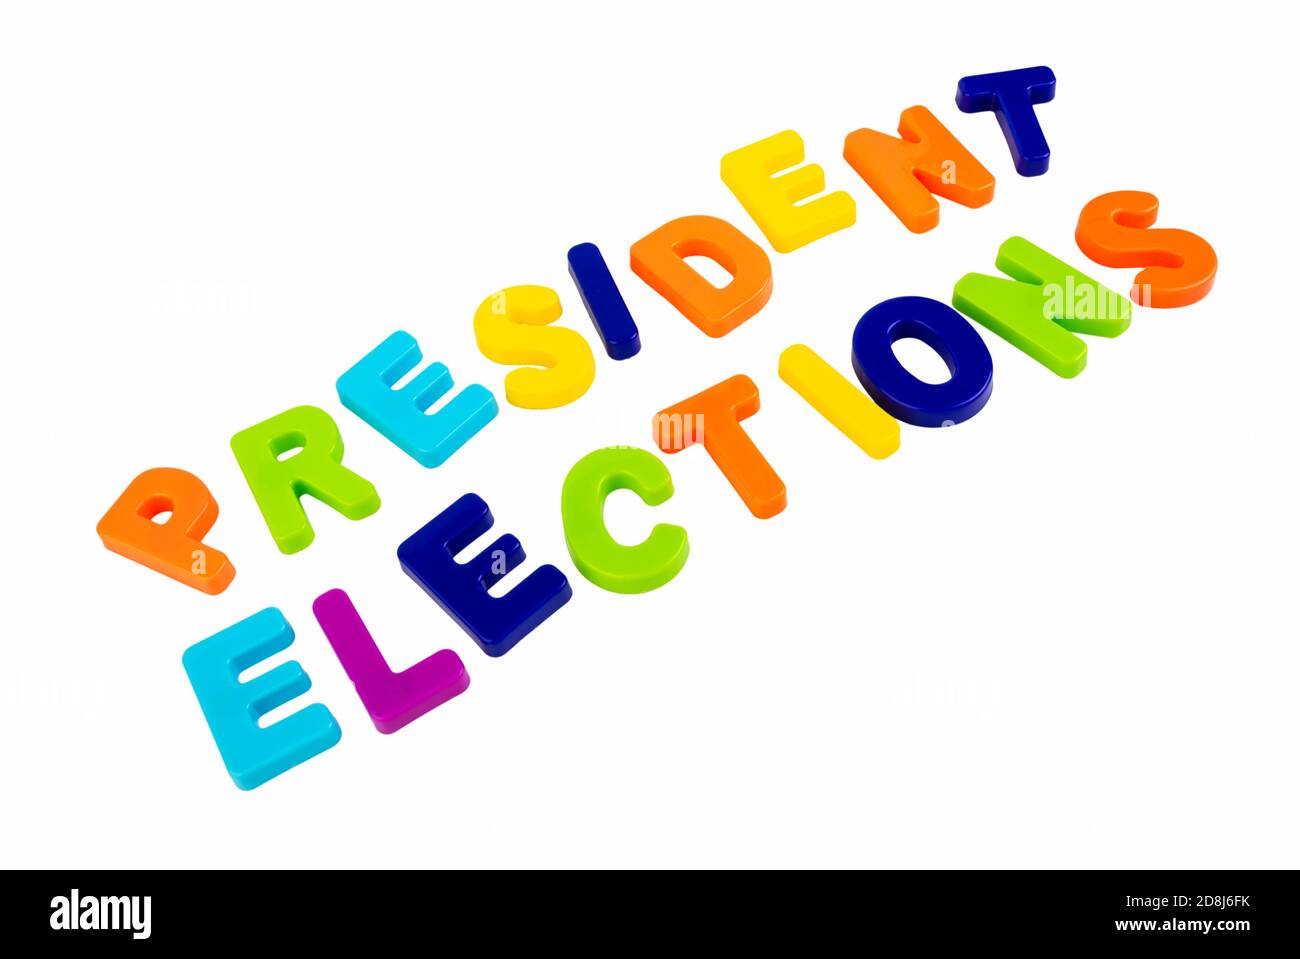 Texte ÉLECTIONS DU PRÉSIDENT écrit en lettres plastiques sur fond blanc. Concept de la campagne électorale. Banque D'Images